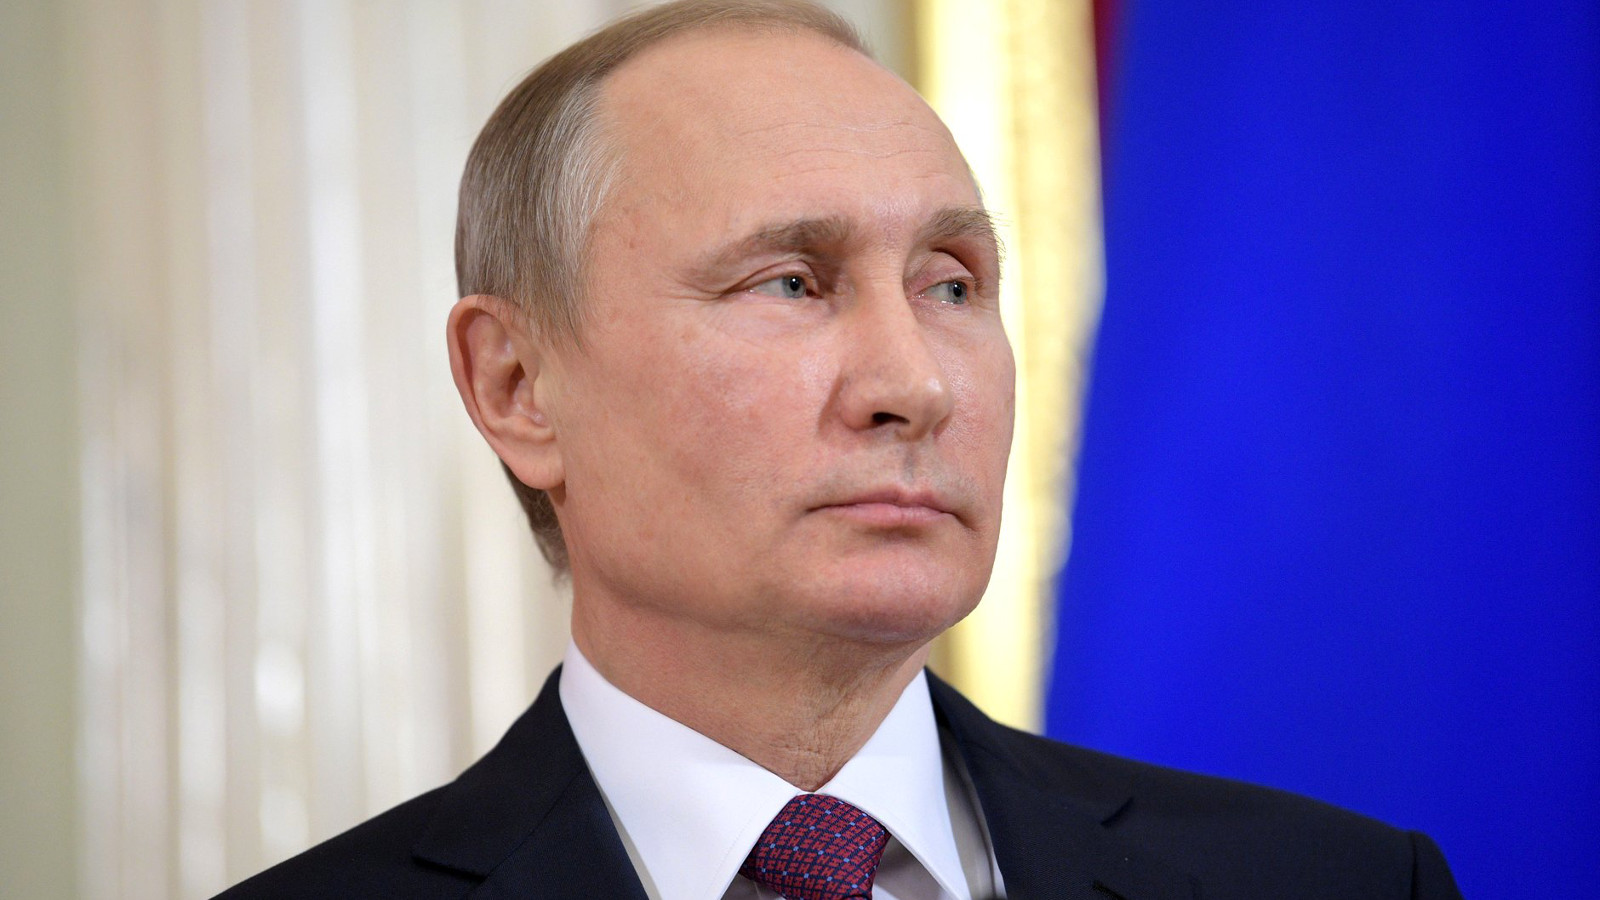 Vladimir Putin: ipotesi sul suo profilo psicologico e personologico